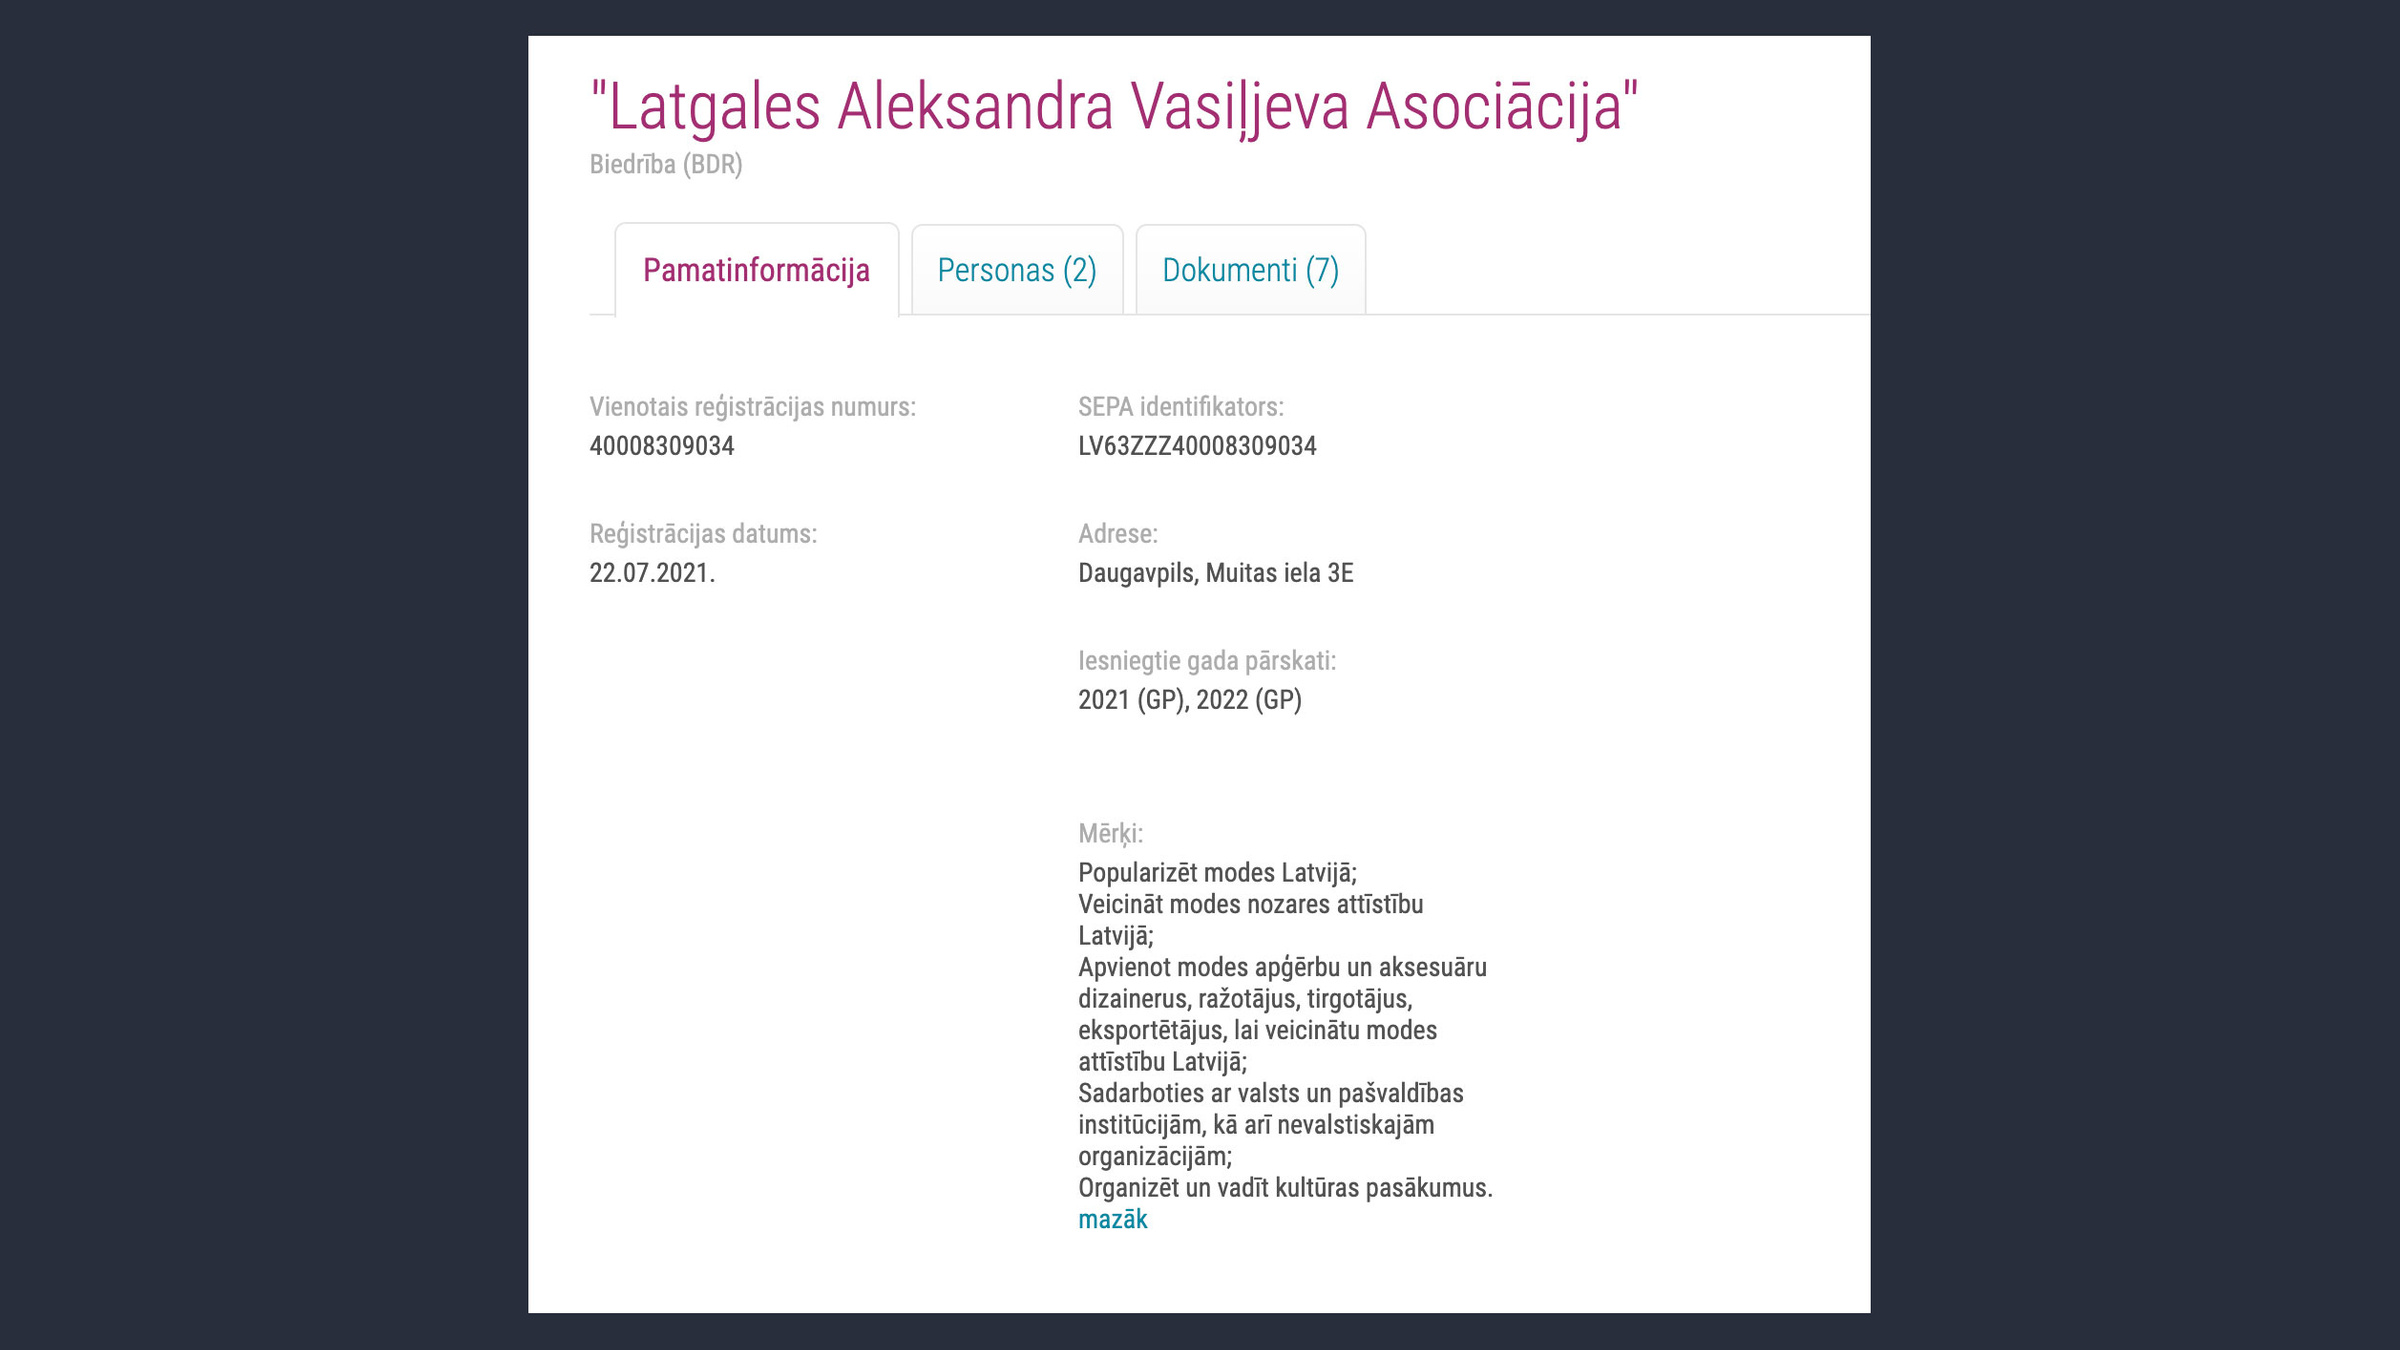 Упоминание имени Александра Васильева можно встретить и в латвийском аналоге ЕГРЮЛ. Фото © info.ur.gov.lv